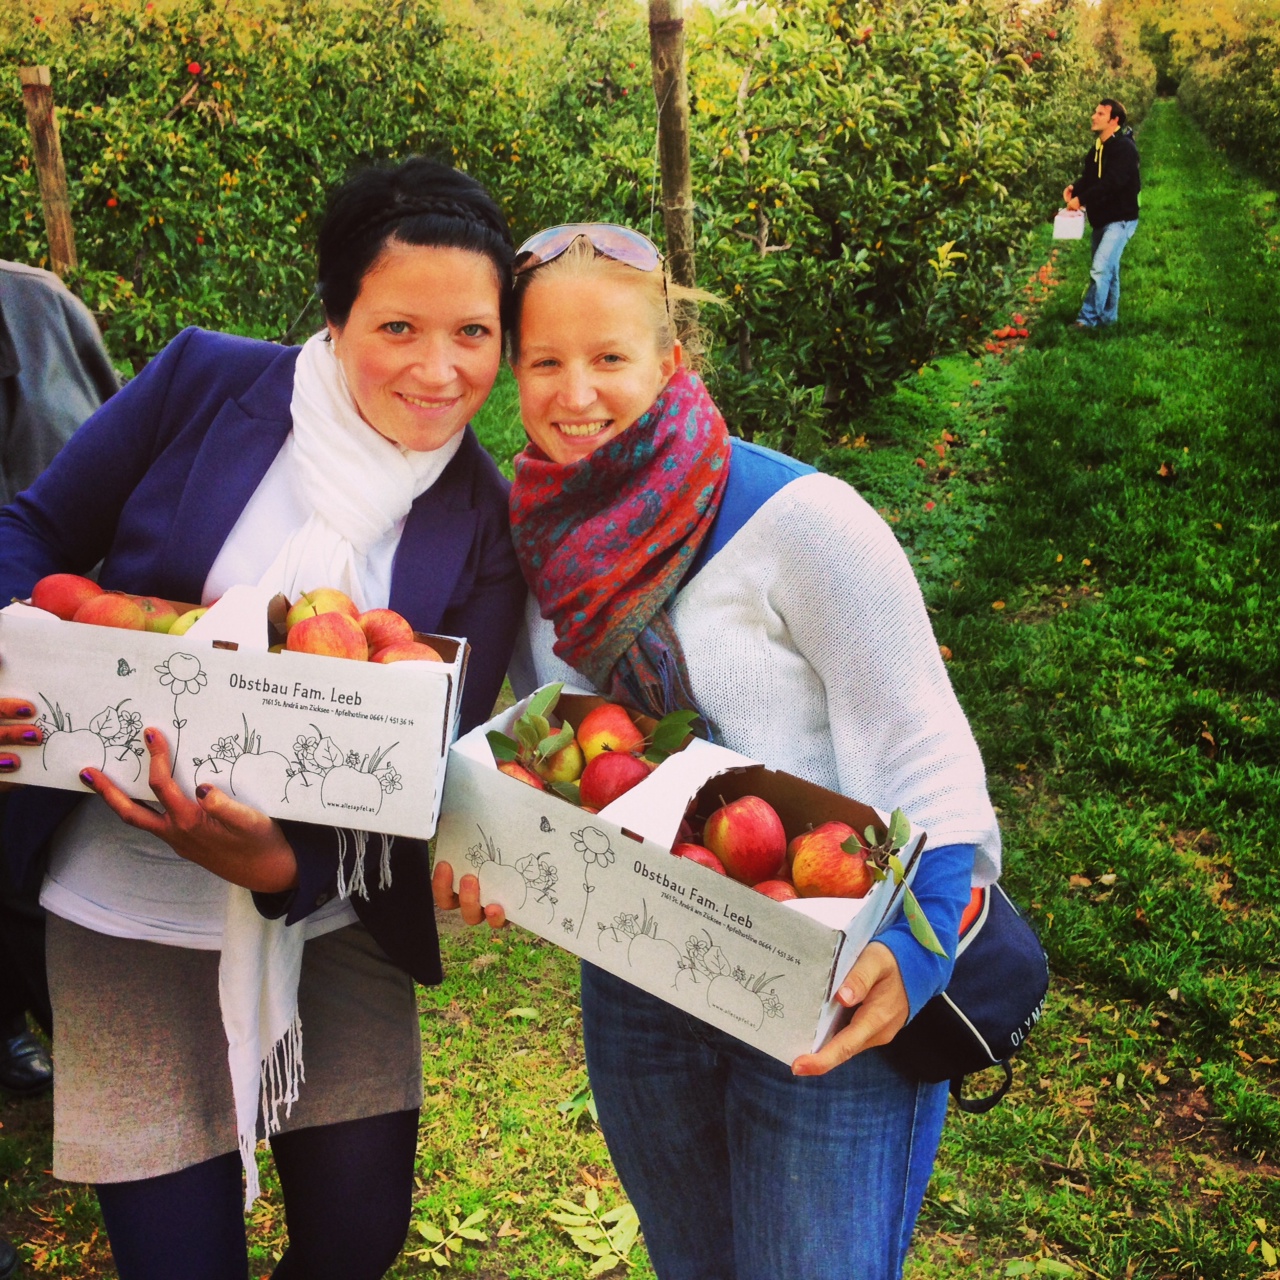 Unterwegs mit der lieben Ursula: Im Burgenland waren wir im Obstgarten unsere eigenen Äpfel ernten, noch heute gilt für mich das bekannte Sprichwort: "An apple a day keeps the doctor away!"